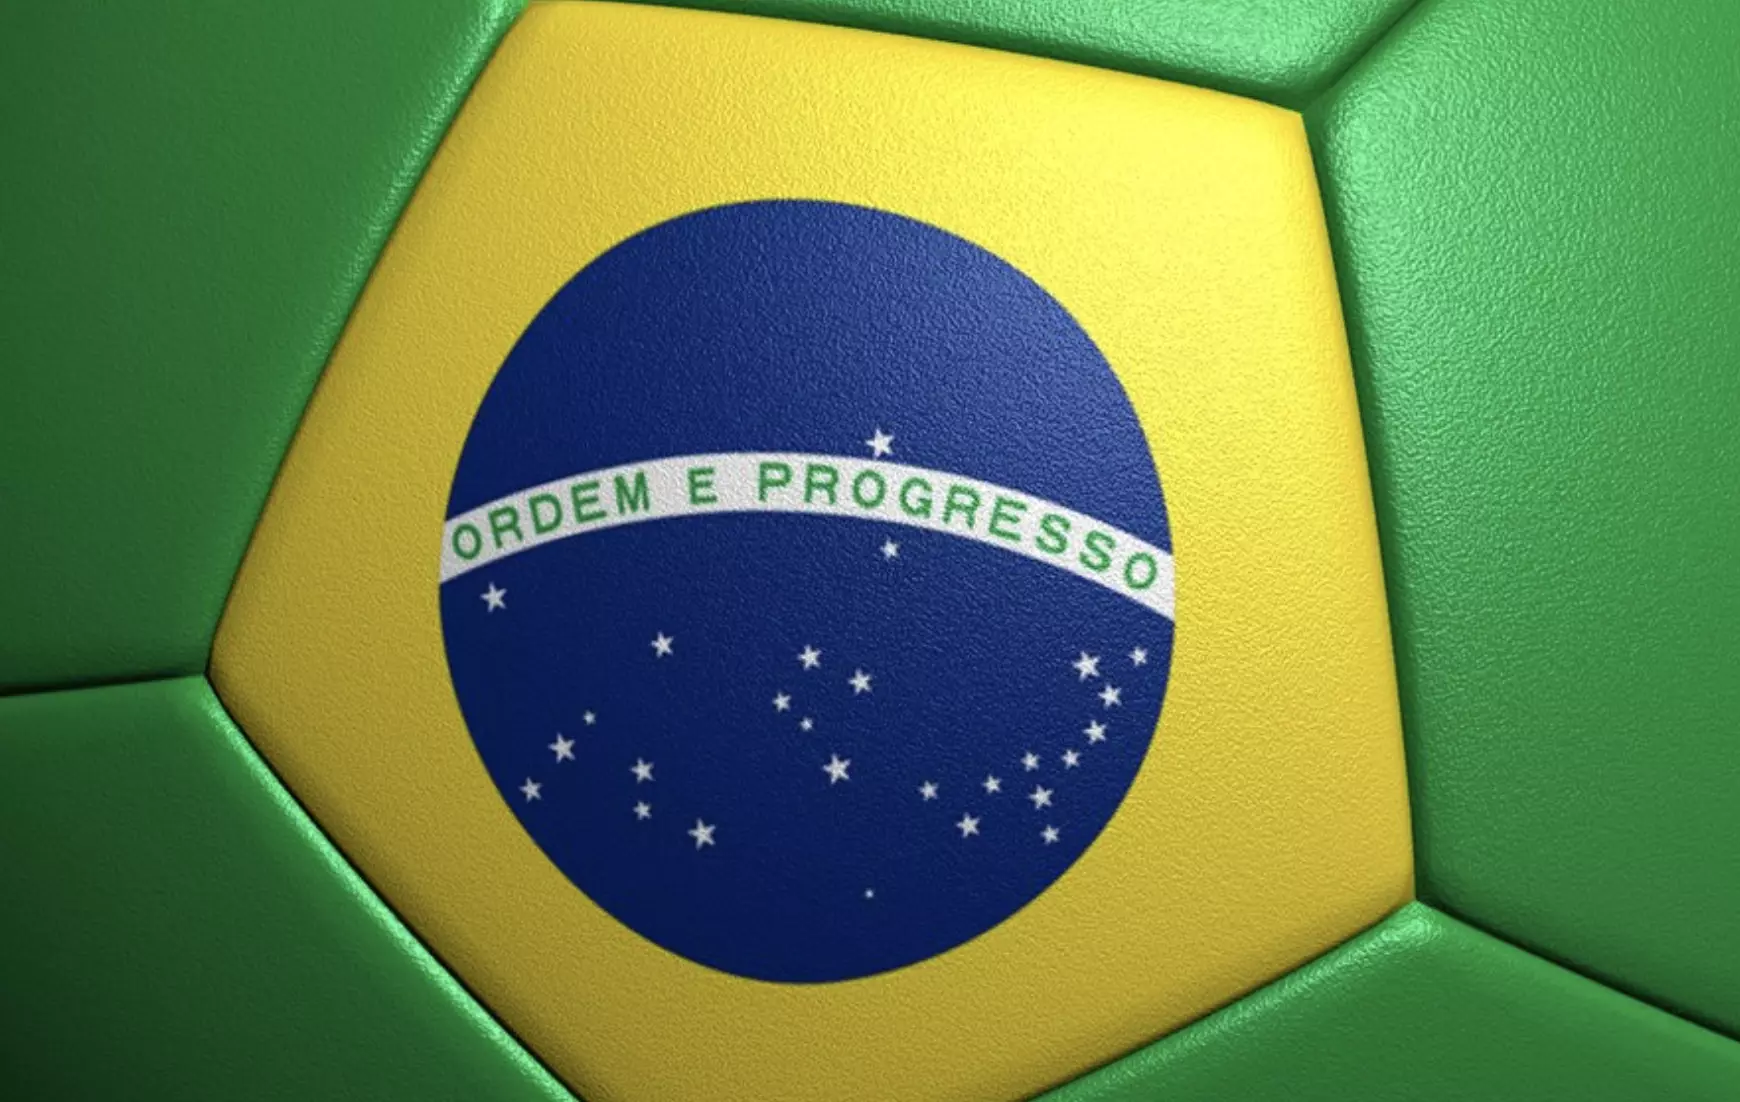 Kecurangan bertaruh adalah hal biasa di liga sepak bola Brasil